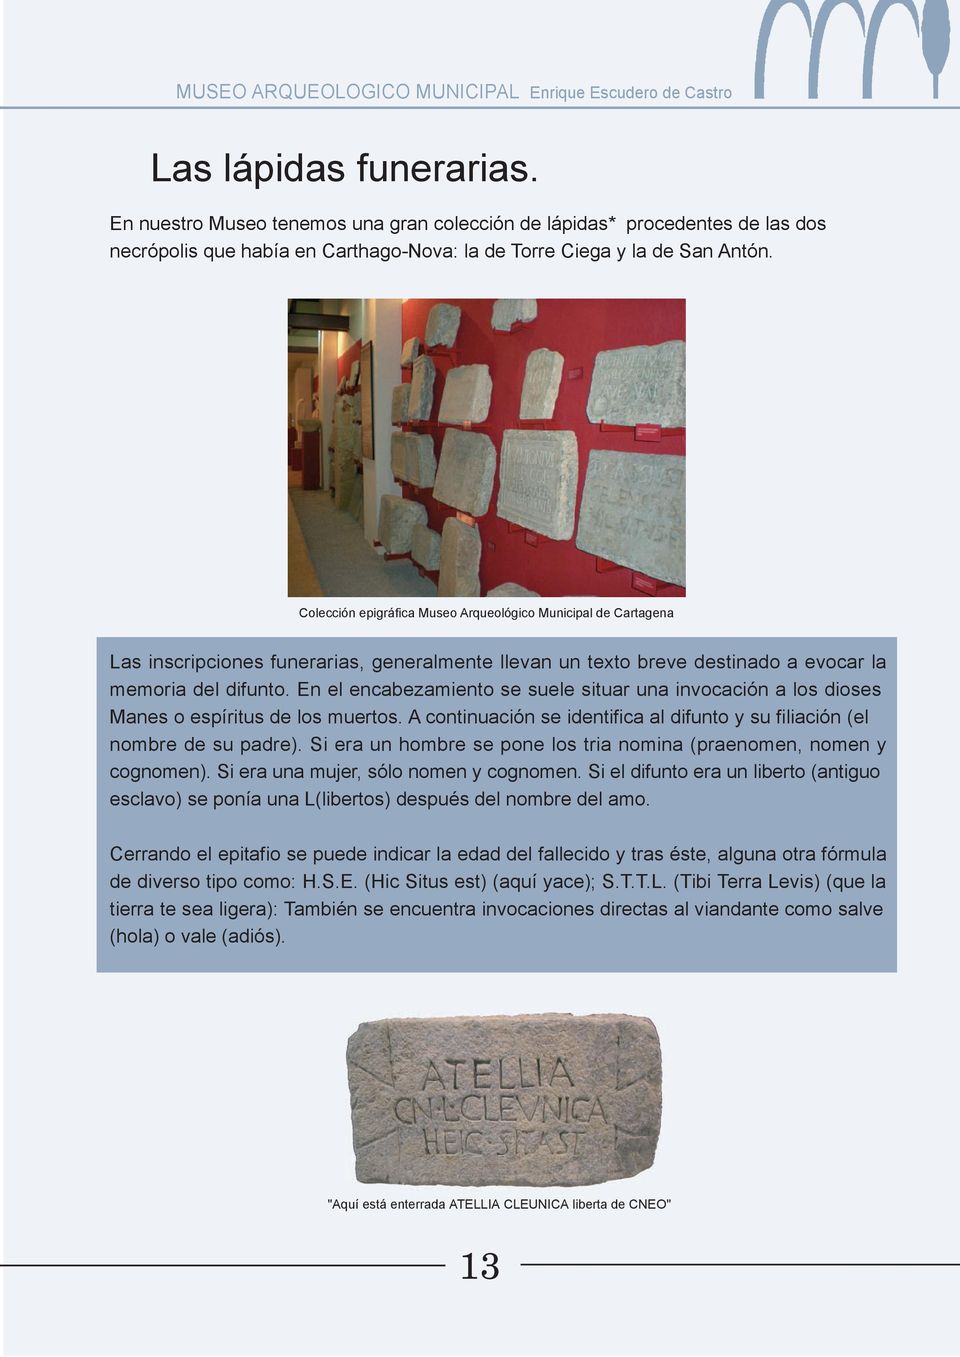 Colección epigráfica Museo Arqueológico Municipal de Cartagena Las inscripciones funerarias, generalmente llevan un texto breve destinado a evocar la memoria del difunto.